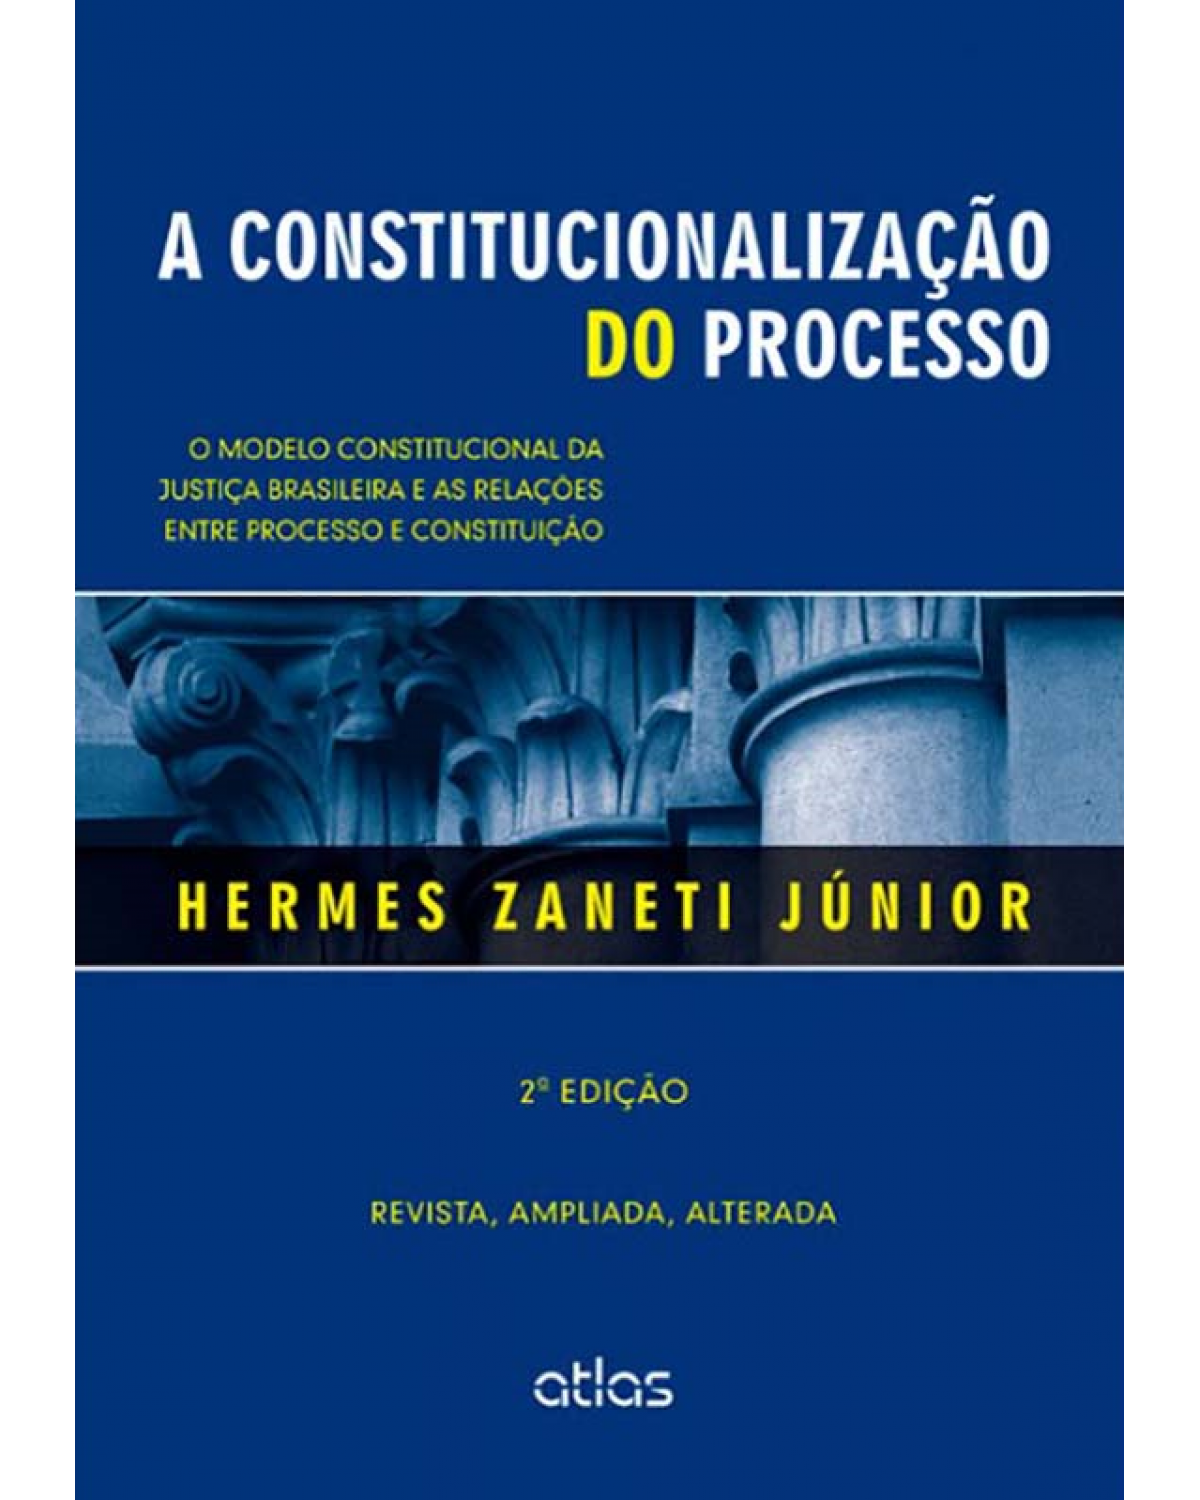 A constitucionalização do processo: O modelo constitucional da justiça brasileira e as relações entre processo e constituição - 2ª Edição | 2014